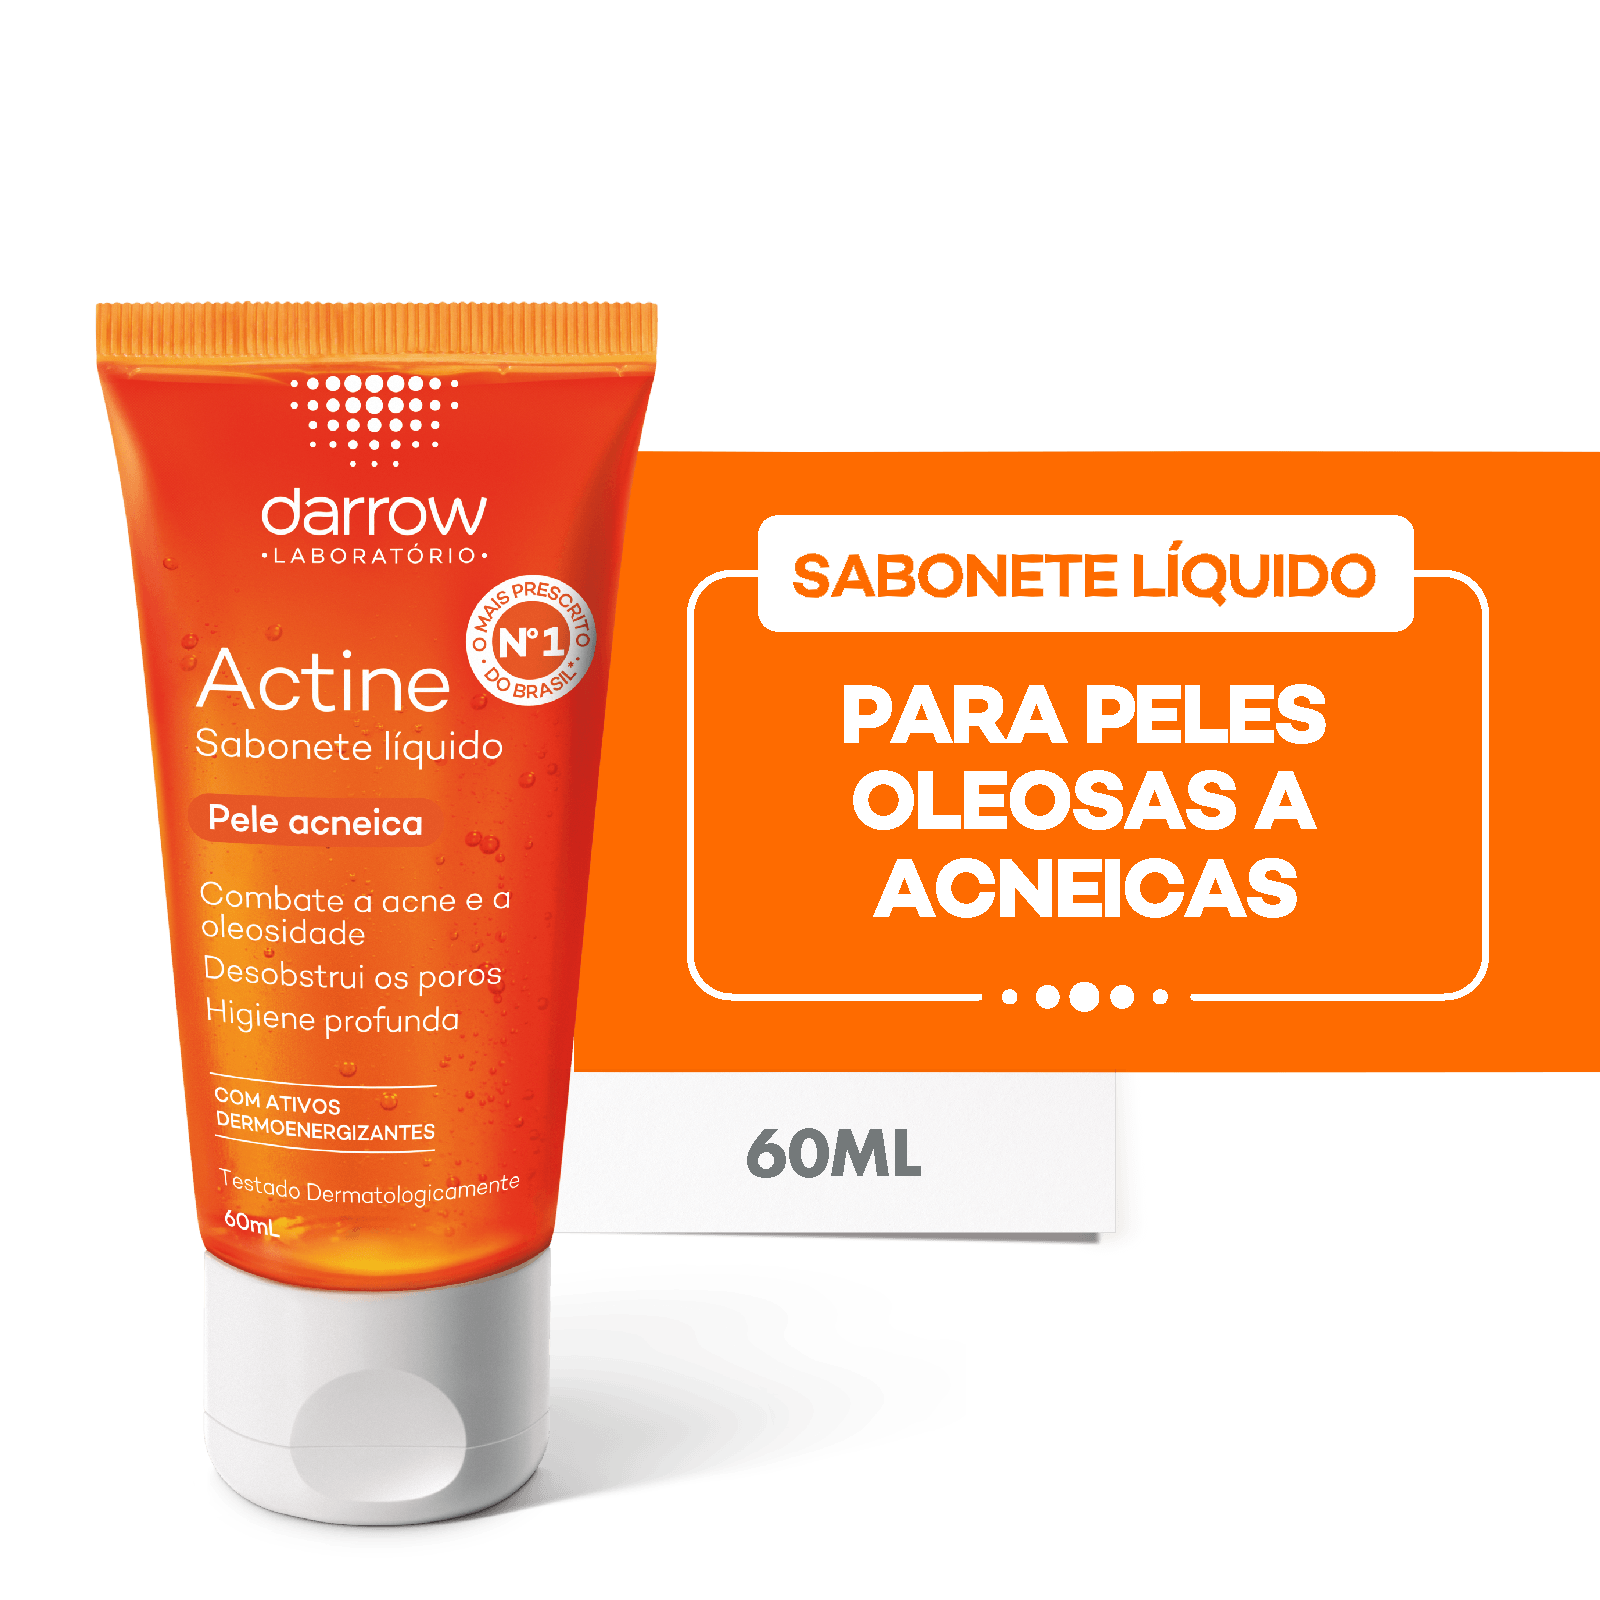 Actine Sabonete Líquido Pele Oleosa a Acneica Darrow - 60ml